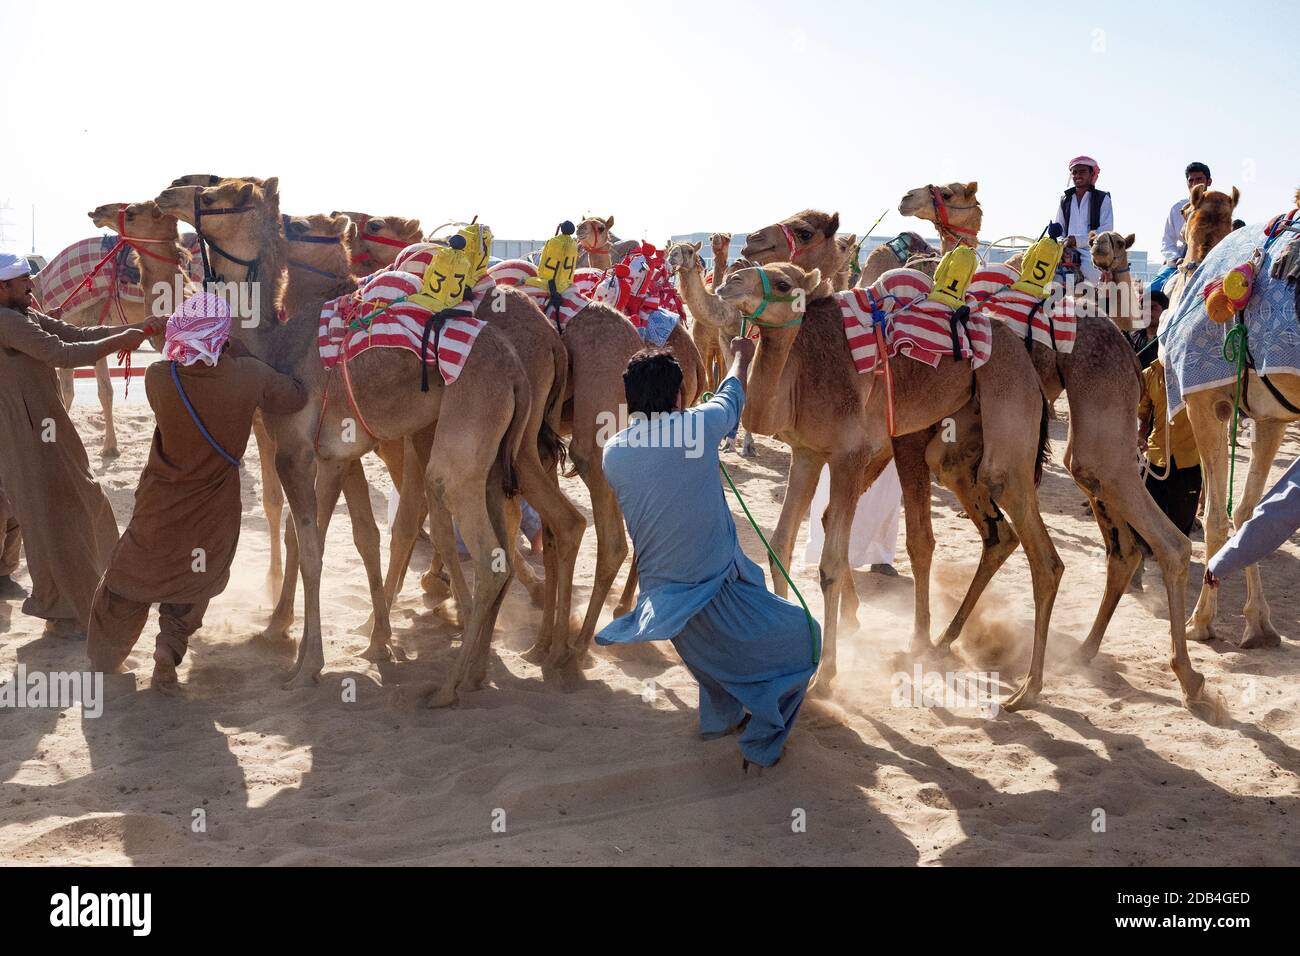 Emirats Arabes Unis / Al Dhaid / Camel entraîneurs avec leurs chameaux, près de la piste de course de chameaux. Banque D'Images